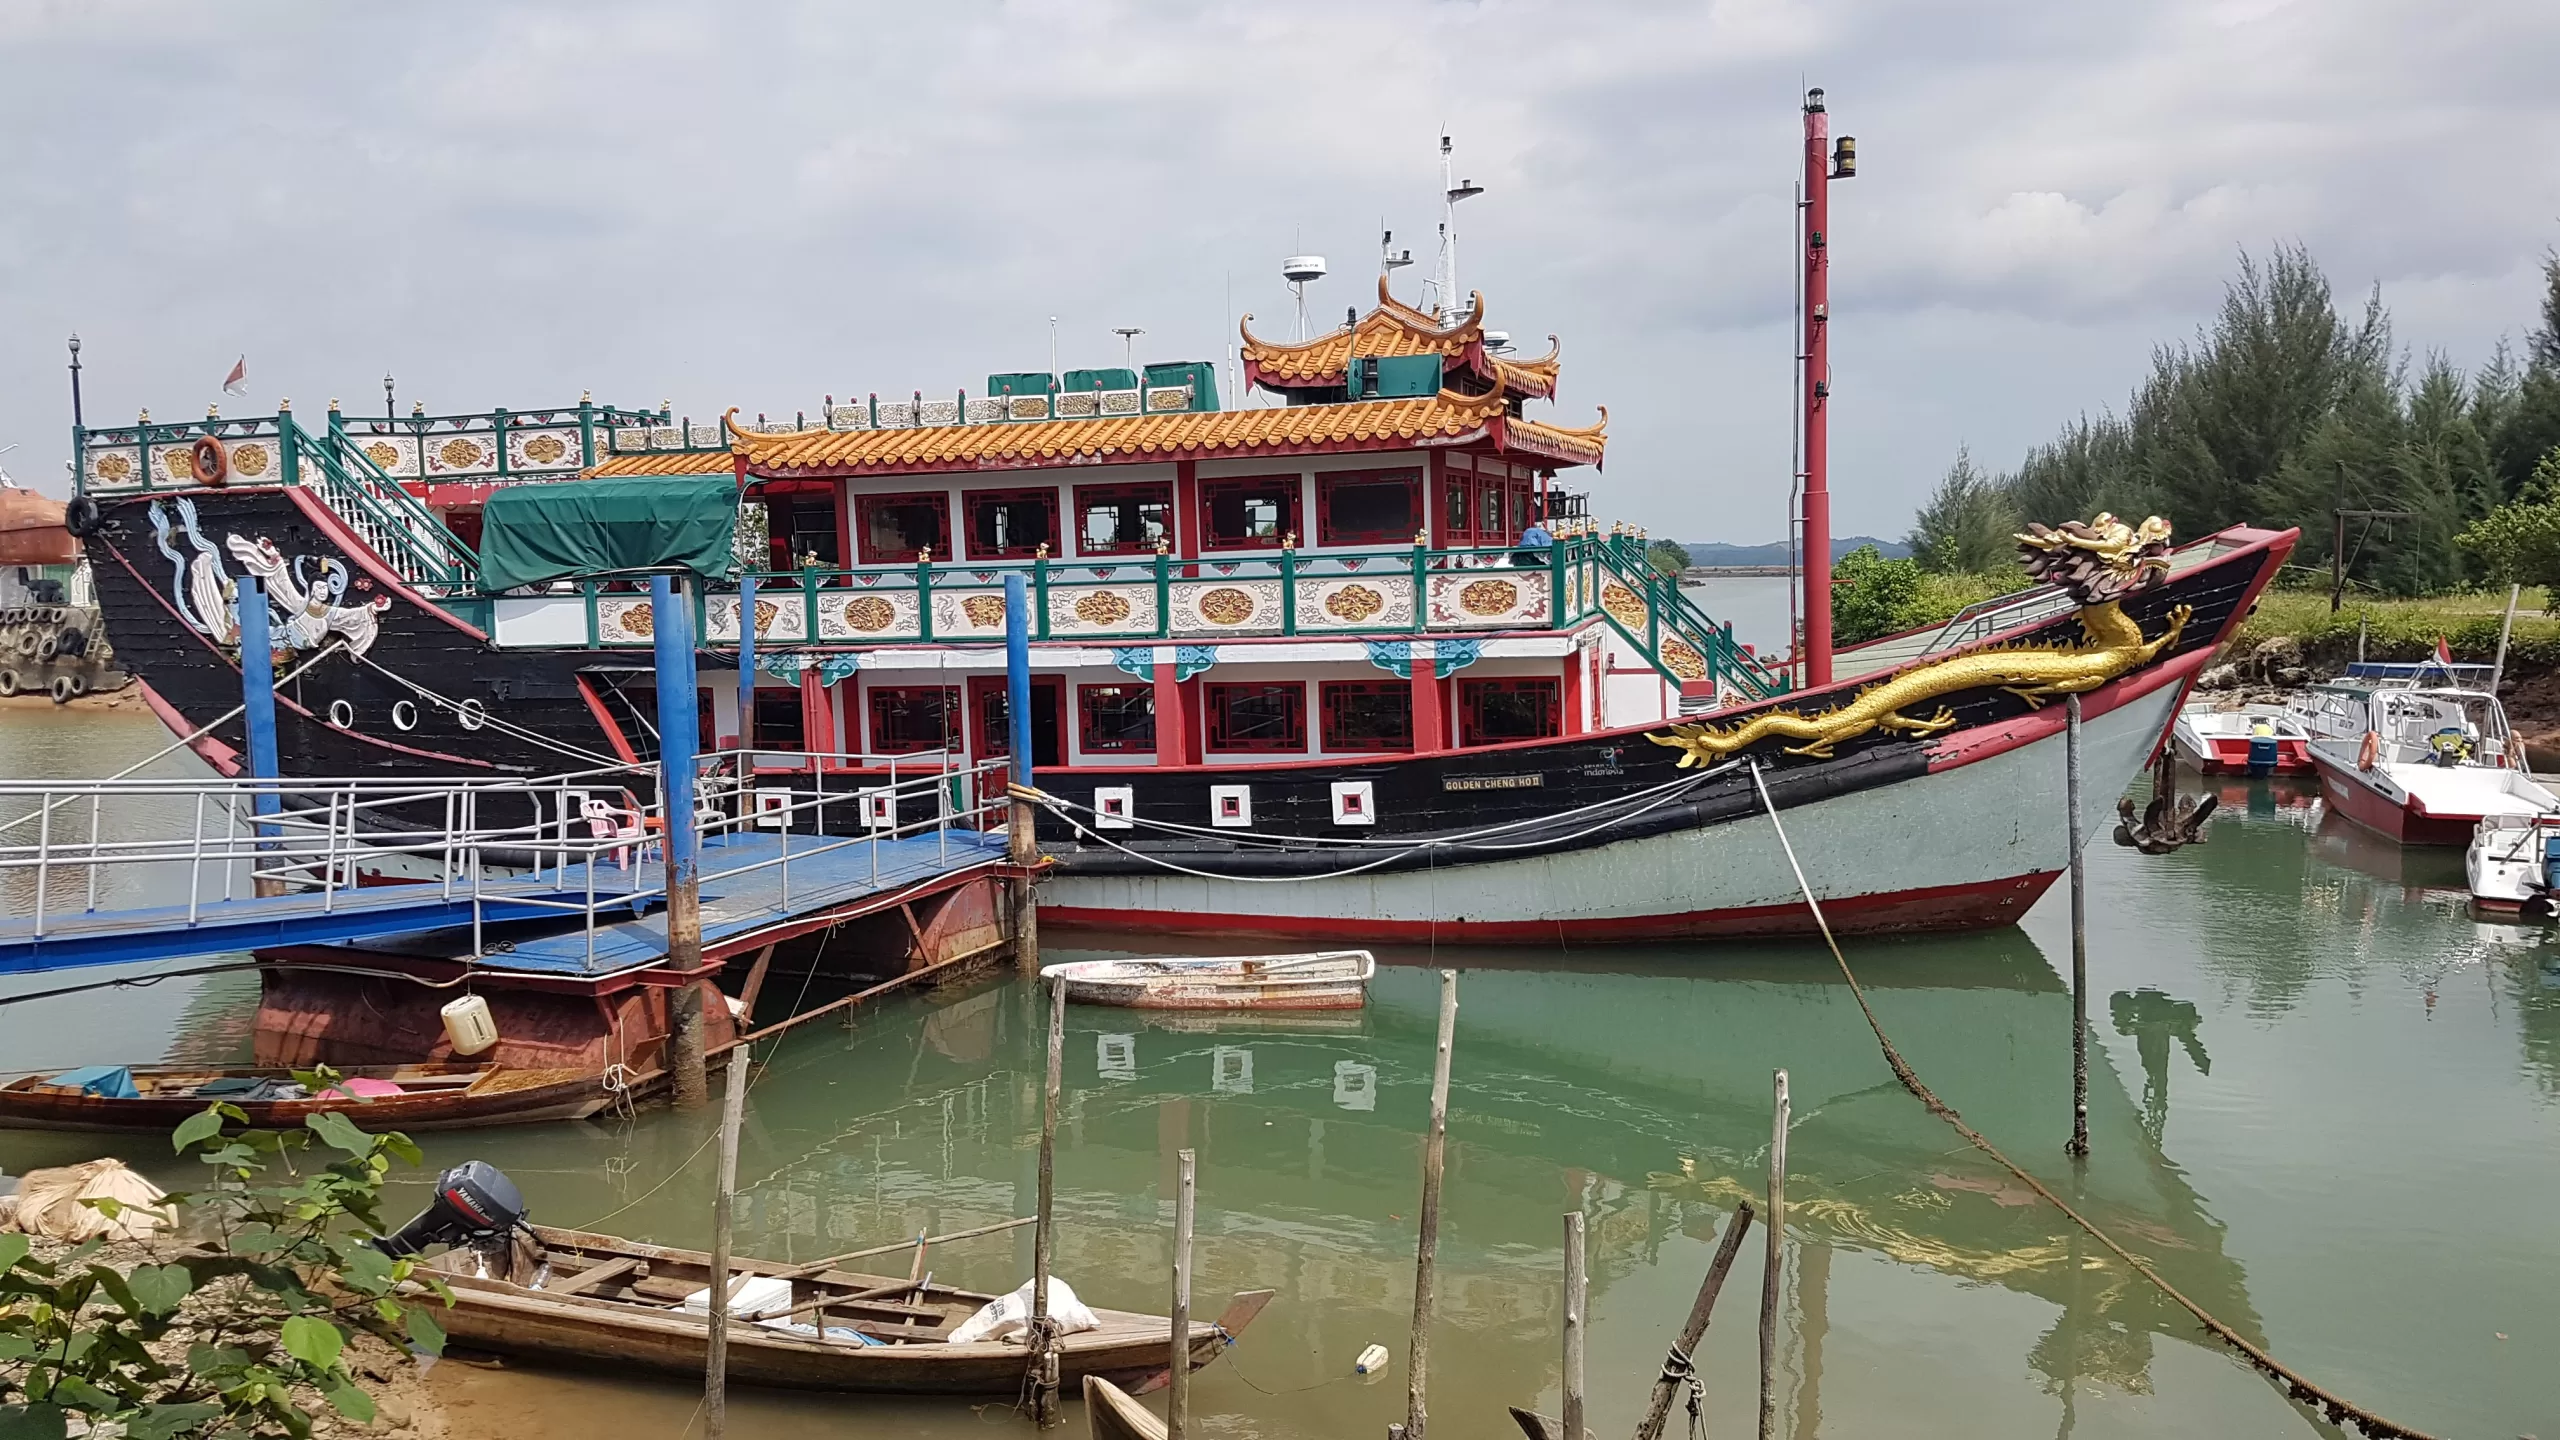 Zheng He (Cheng Ho) replica ship at Batam, Indonesia